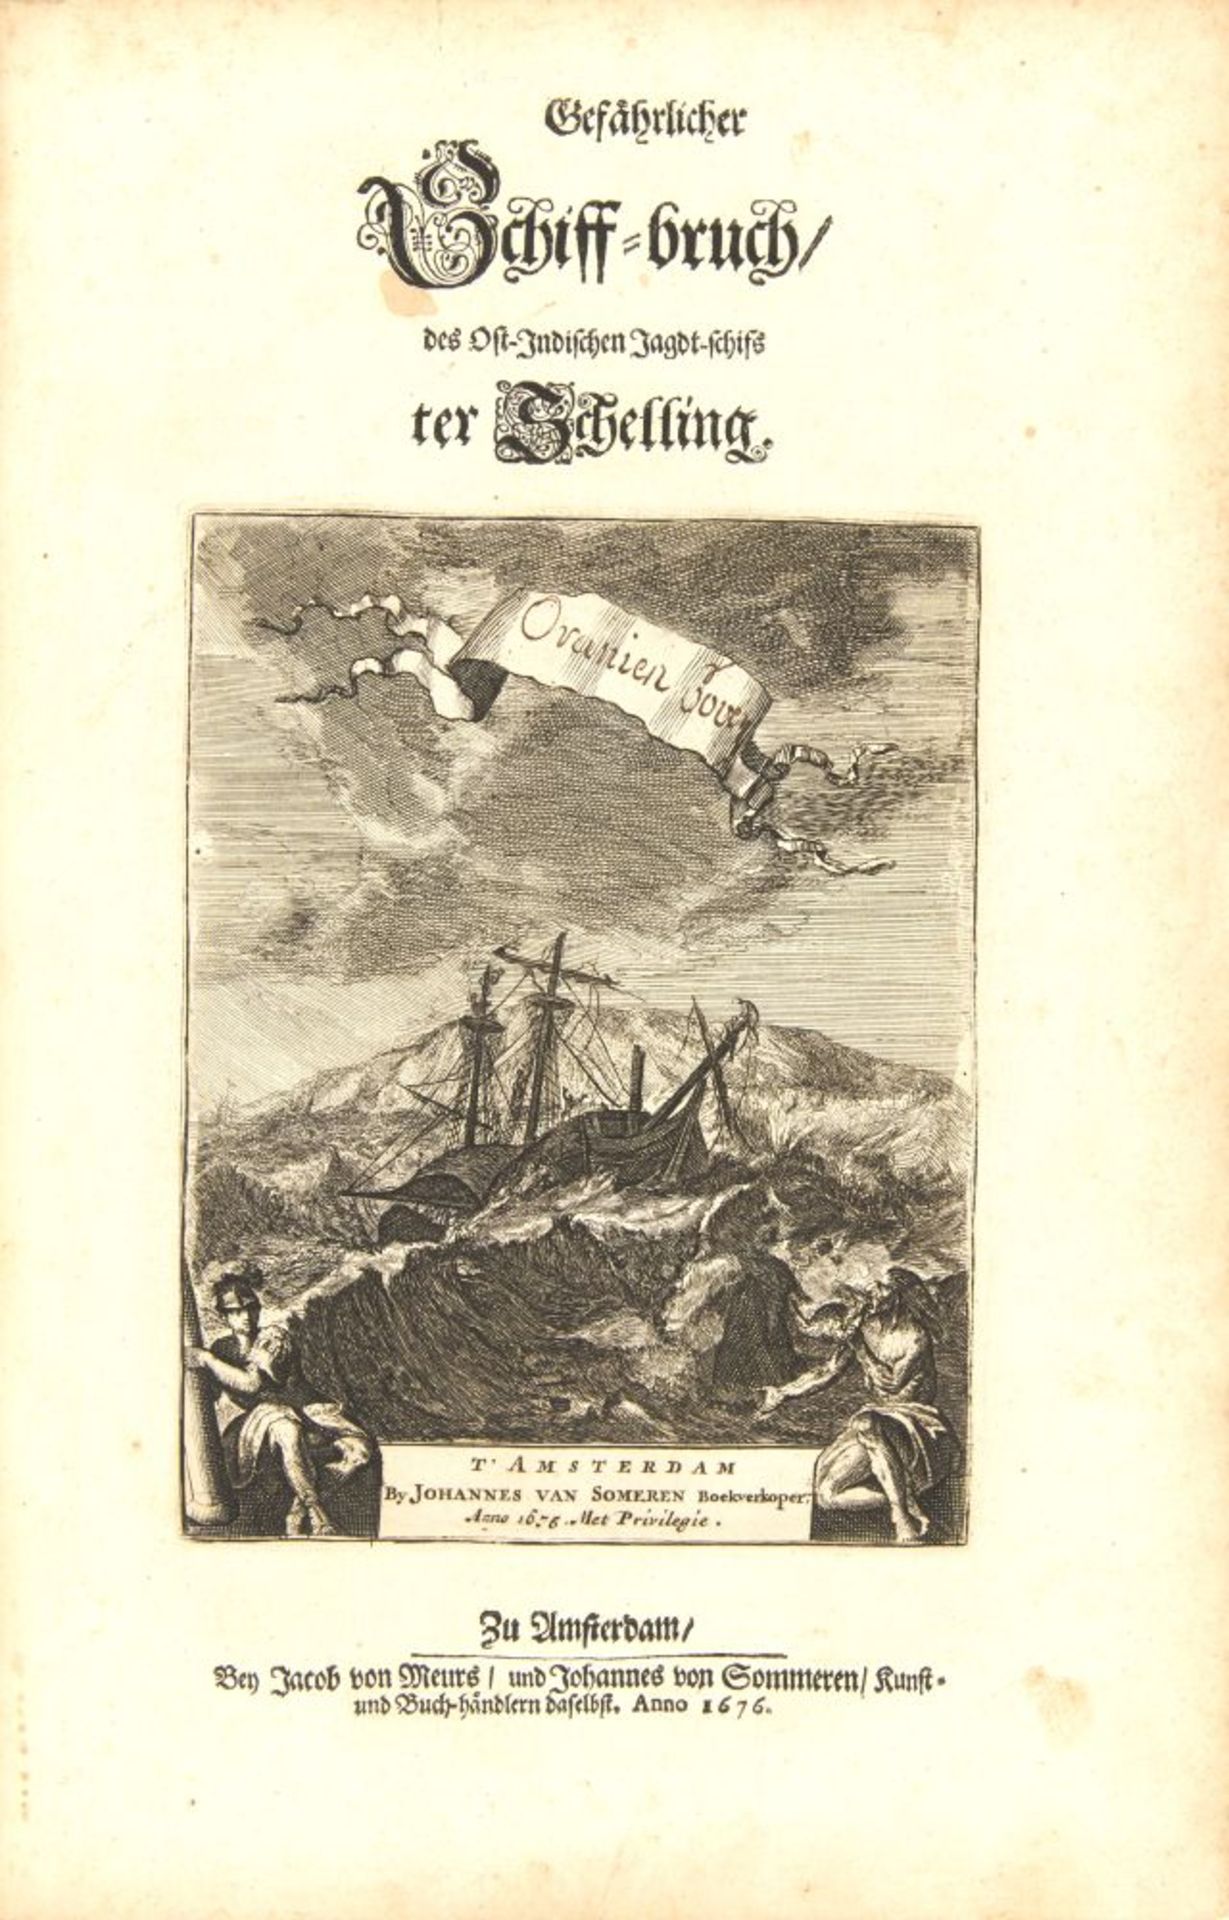 W. Schouten, Ost-Indische Reyse. Amsterdam 1676. - Image 3 of 4